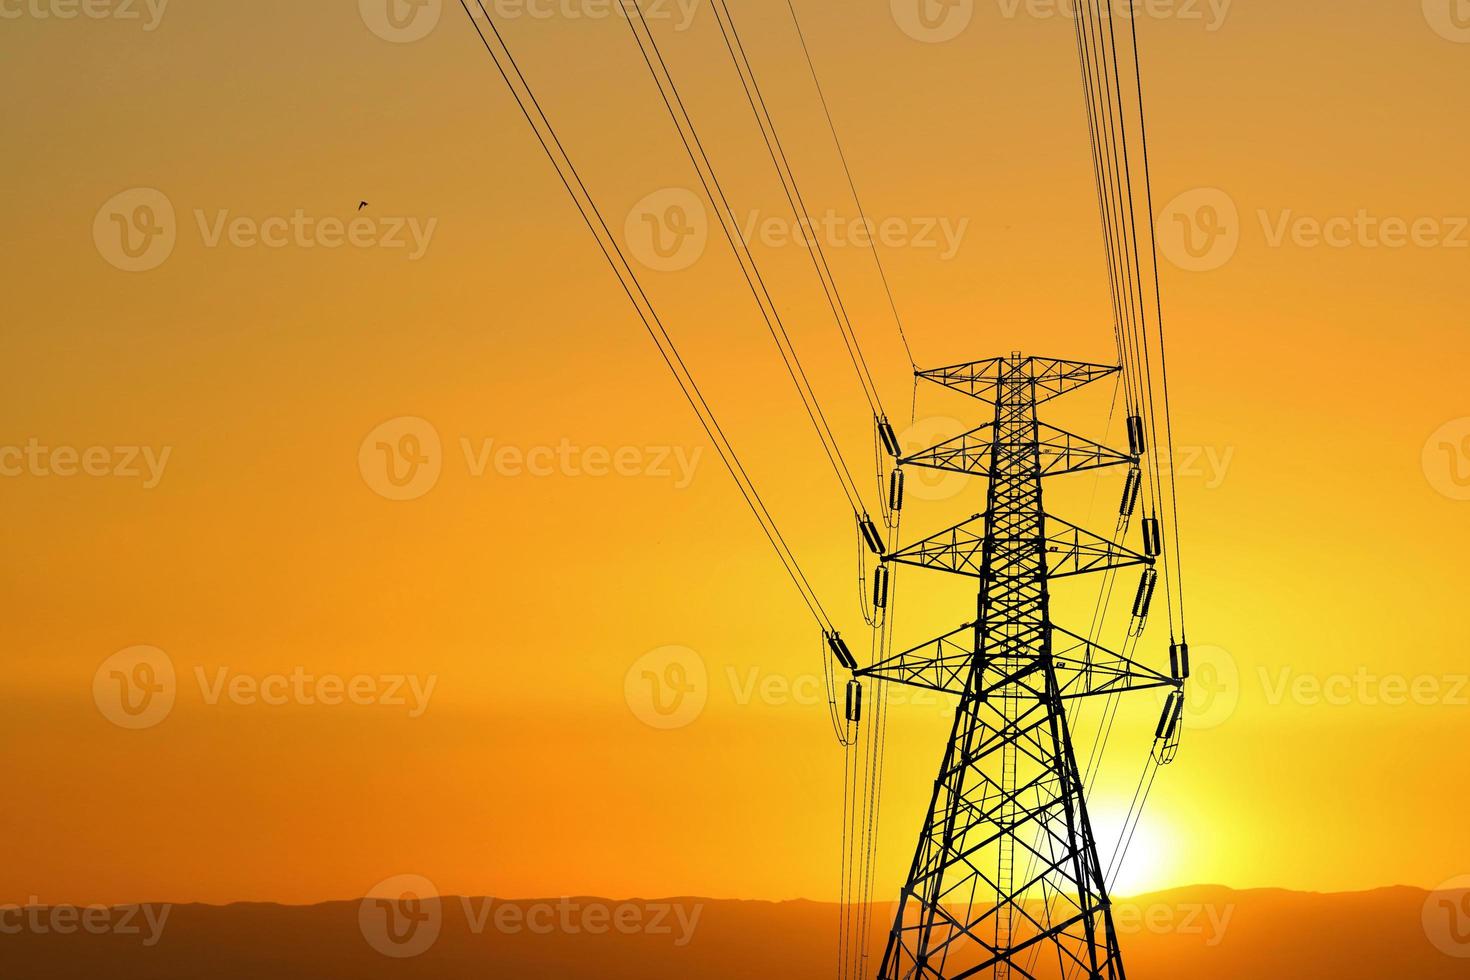 silhueta de postes de alta tensão com fios elétricos. silhueta de cabos de linha de alta tensão em um pôr do sol de noite laranja. estrutura de aço de postes elétricos. conceito de transmissão de energia elétrica foto